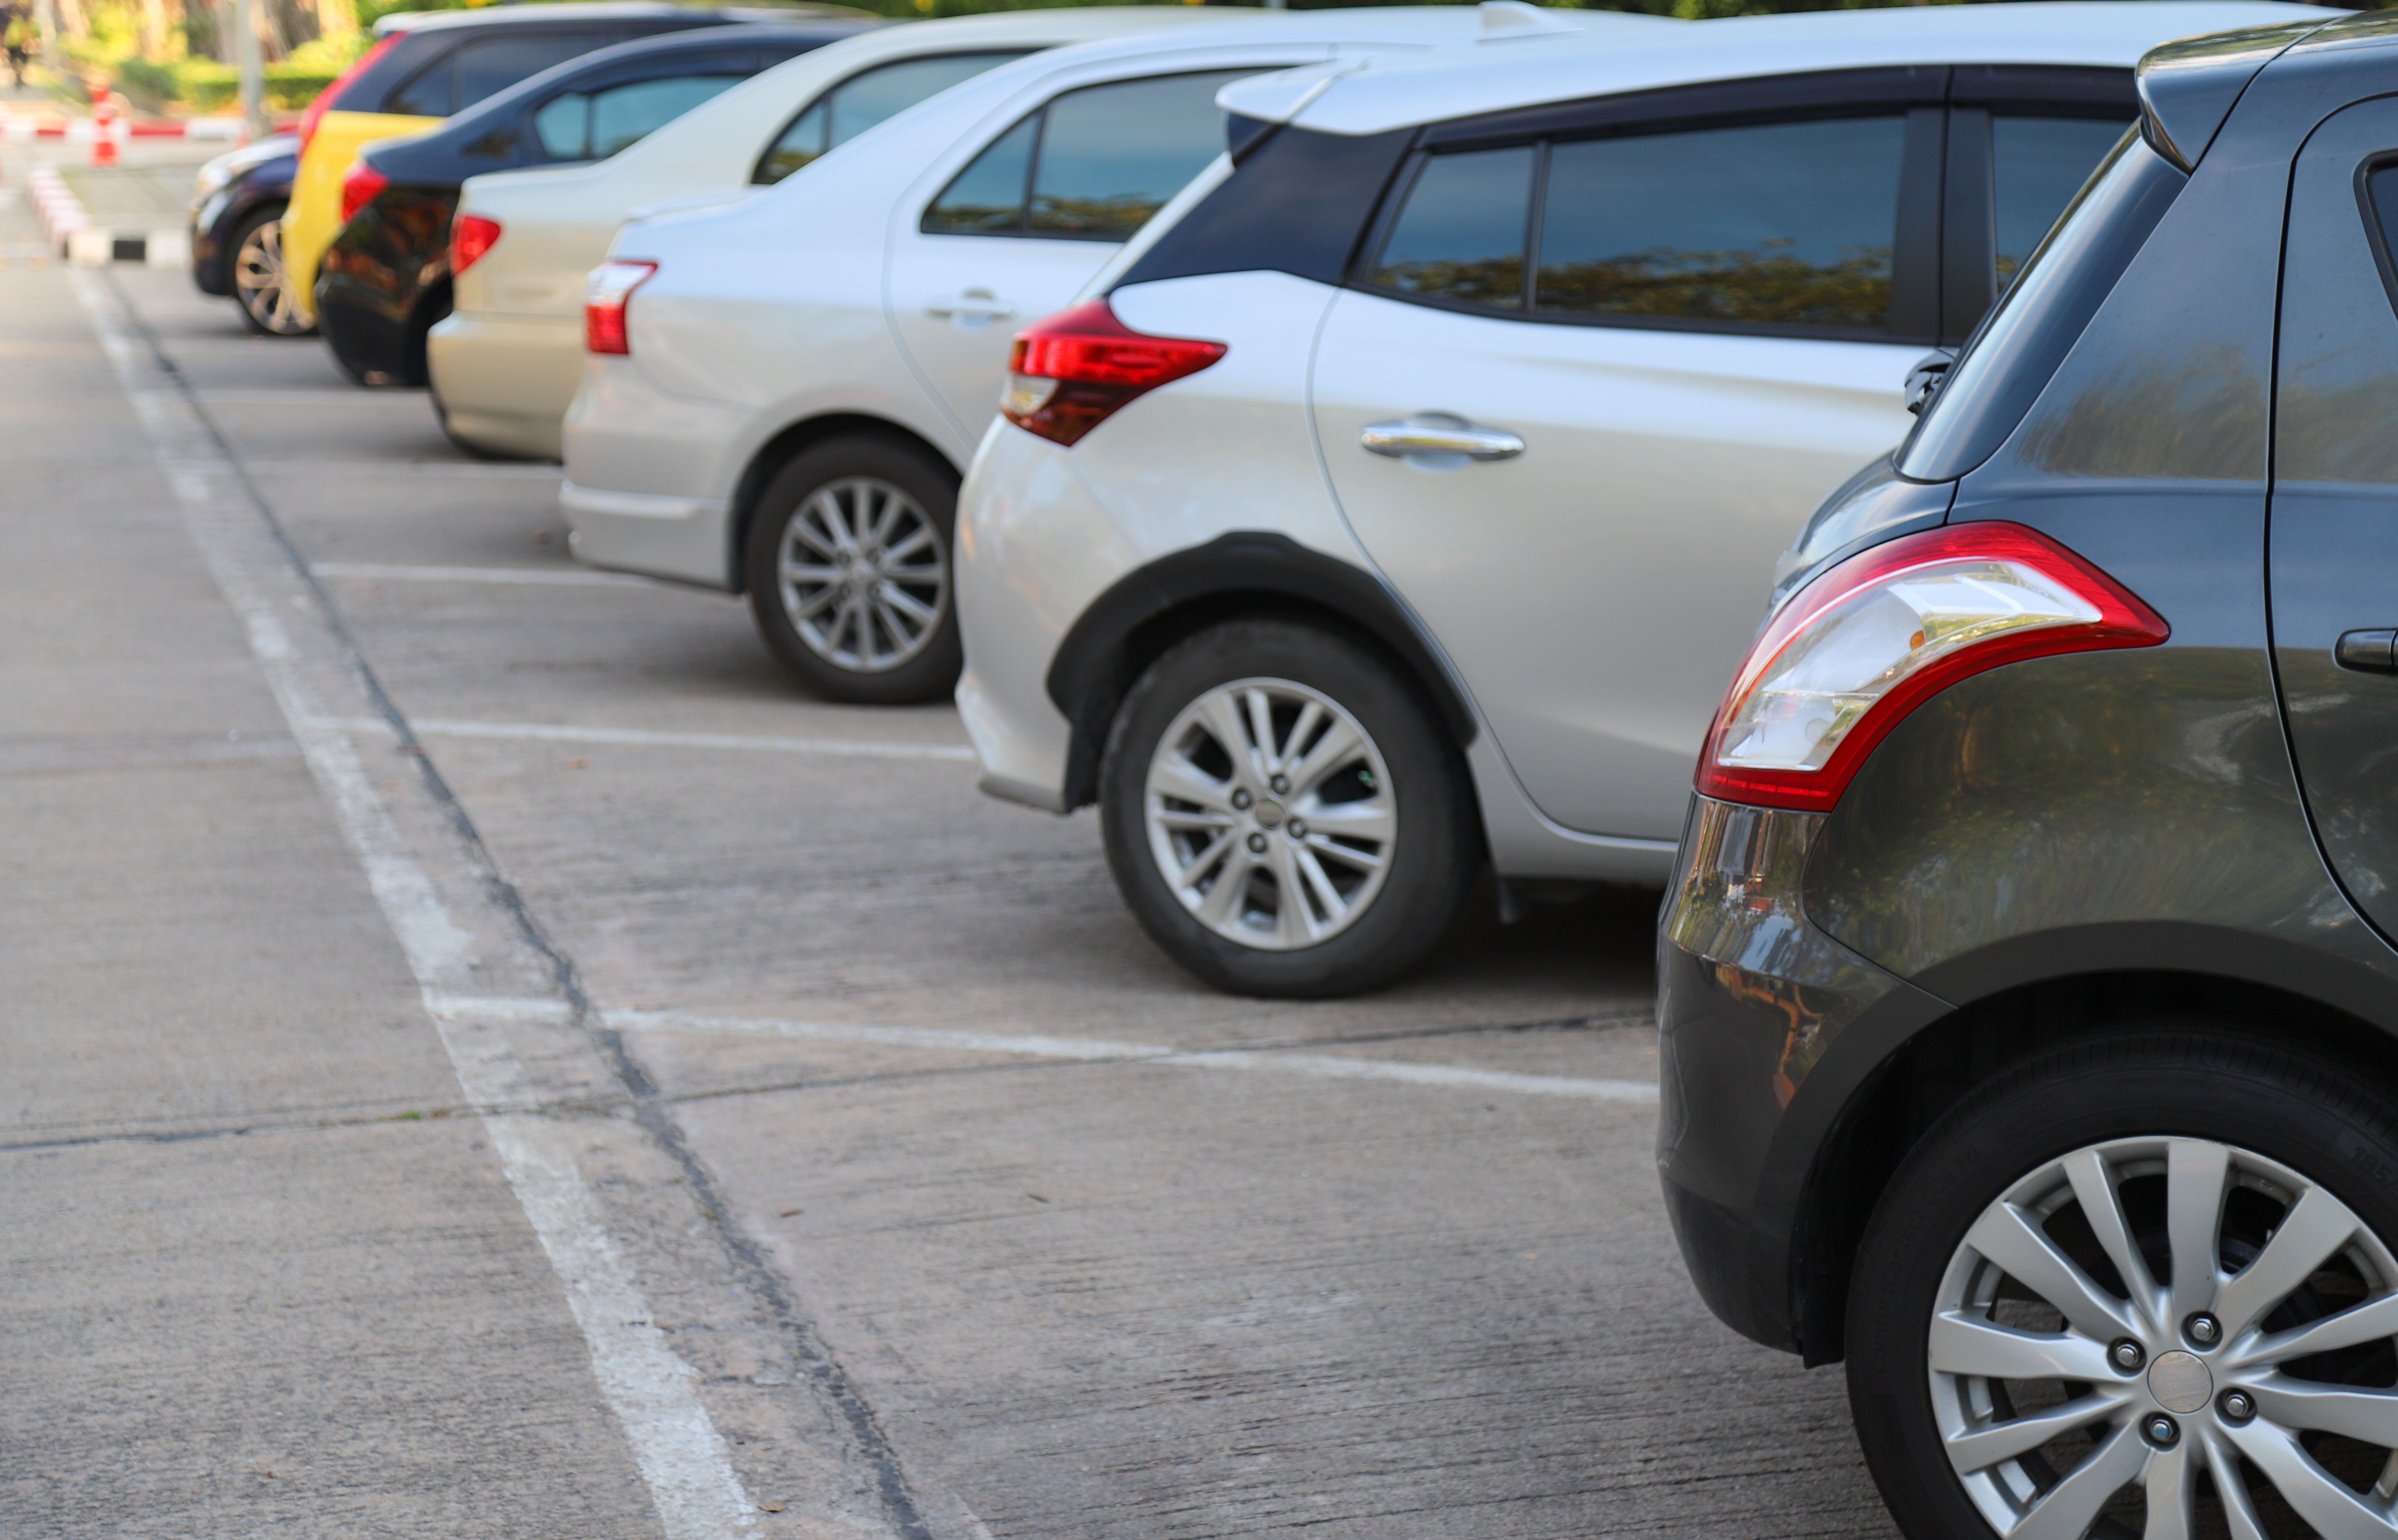 Locurile de parcare de reședință se scumpesc de la 1 ianuarie. Care sunt noile tarife